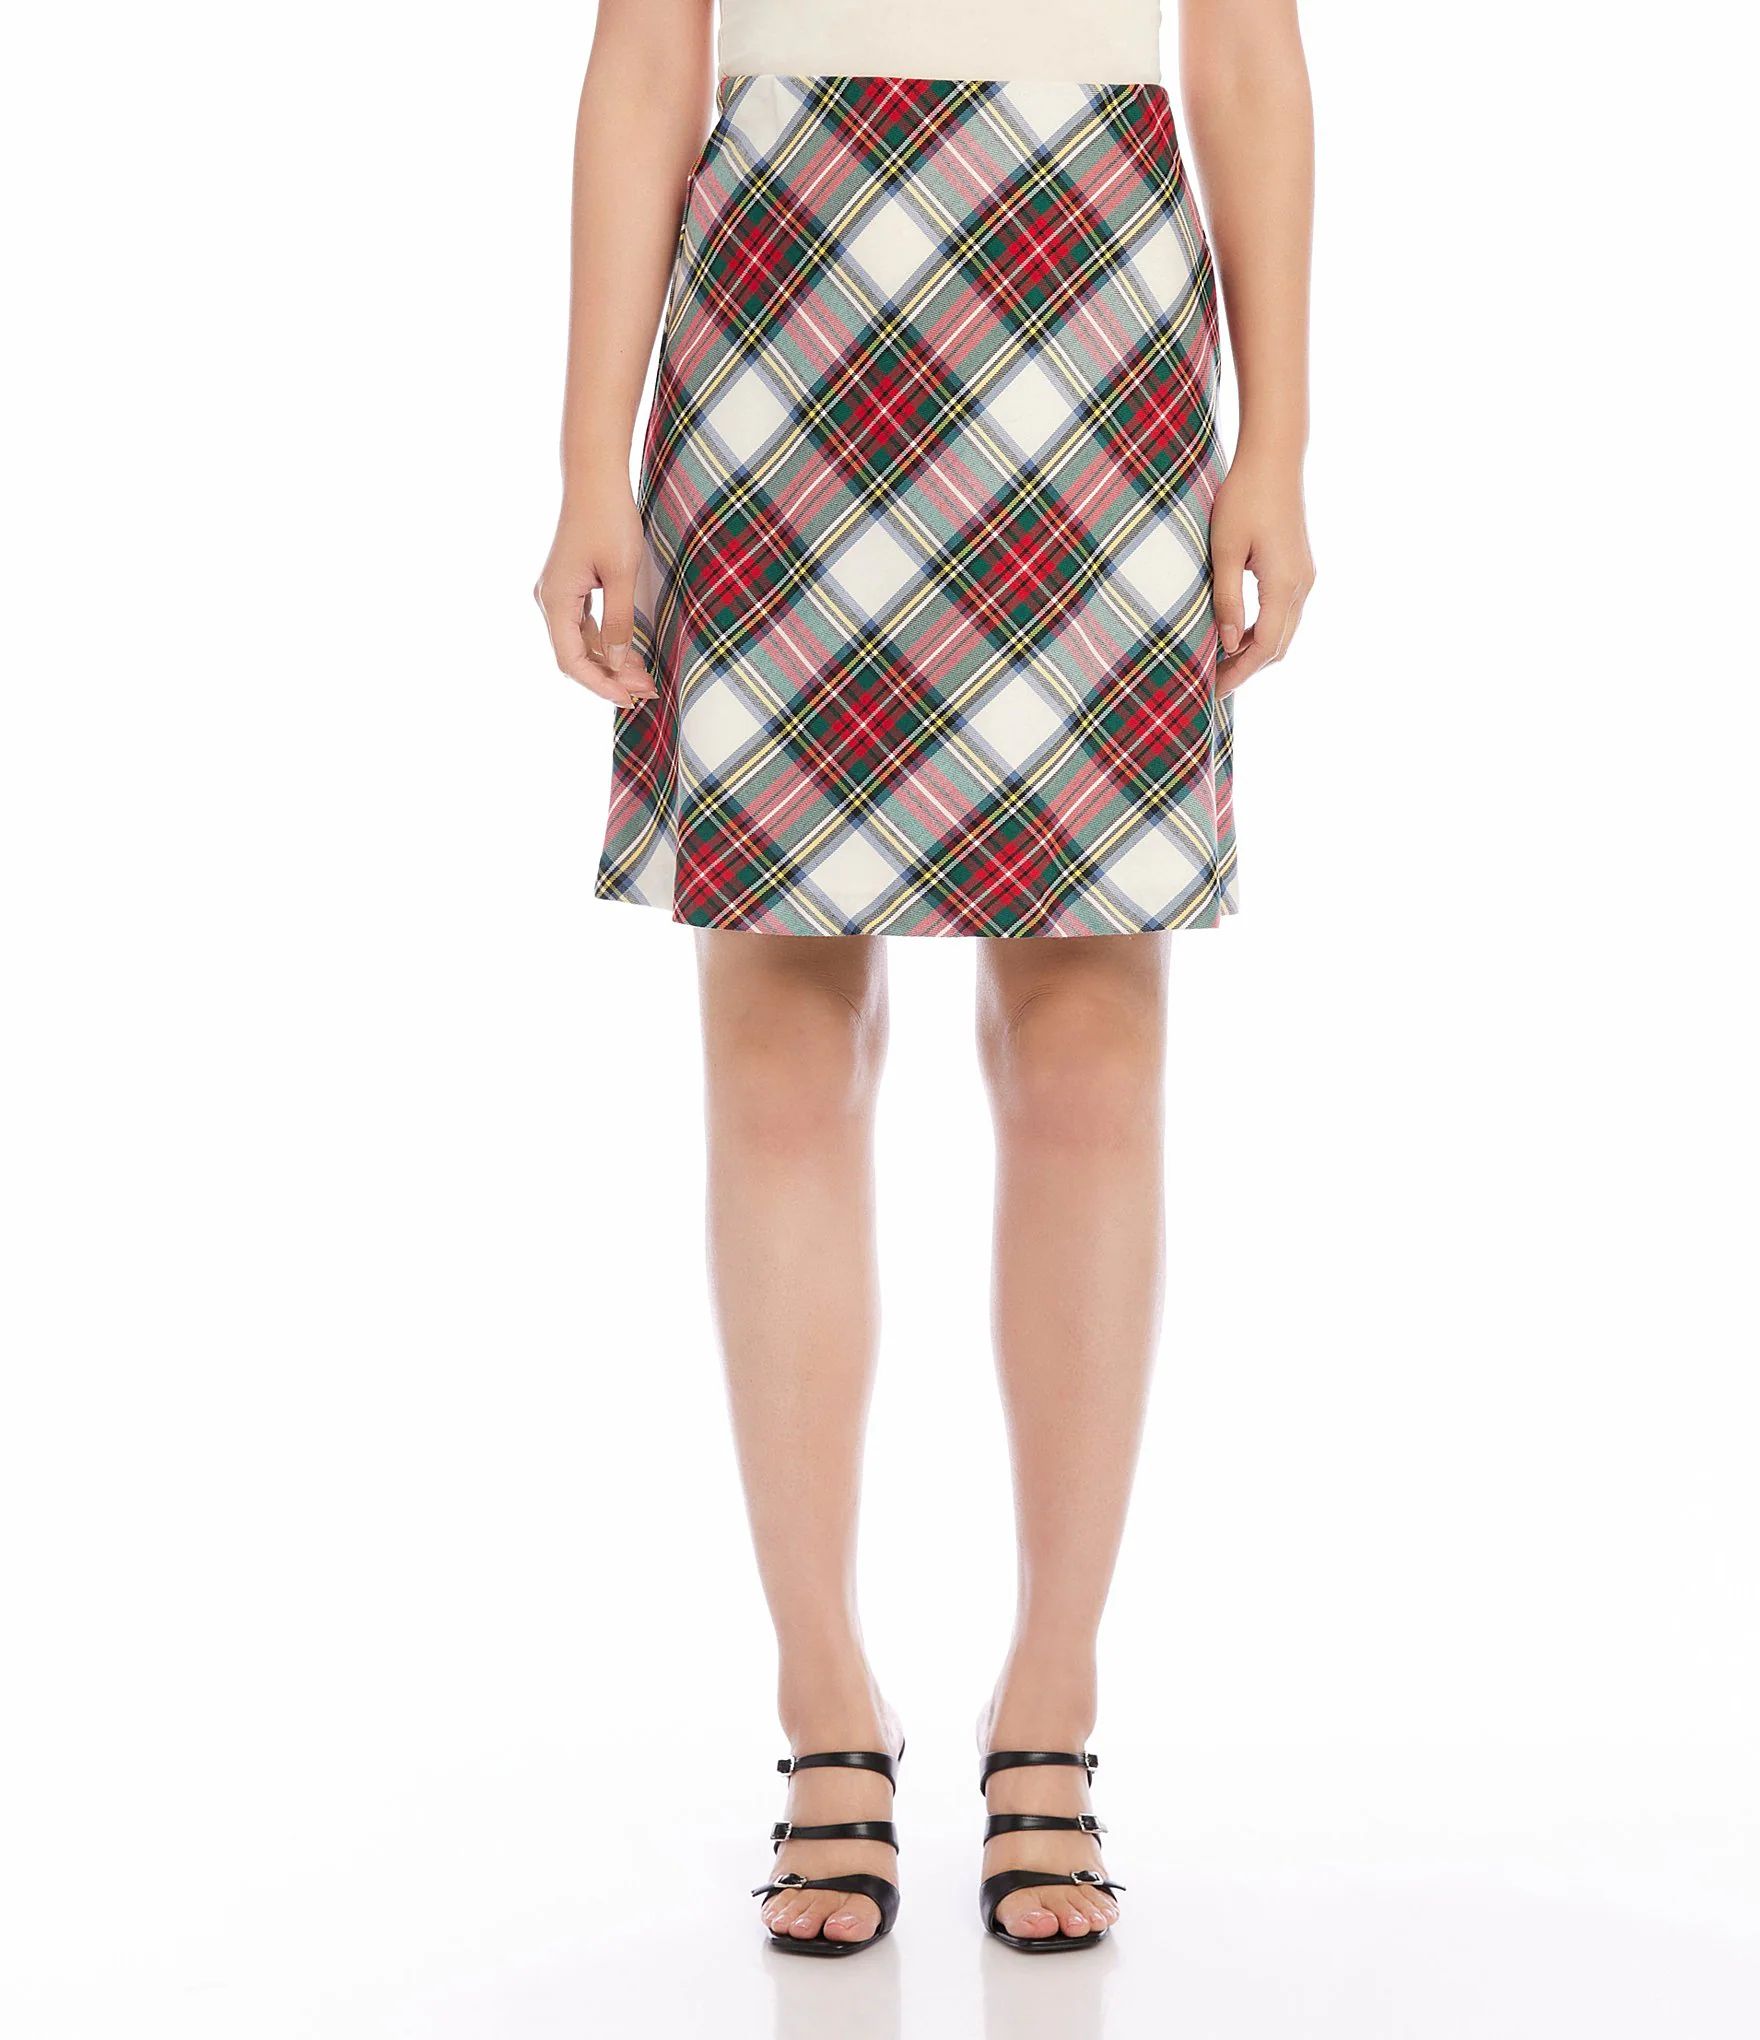 Woven Tartan Plaid Print Bias Cut Pull-On Pencil Skirt | Dillard's